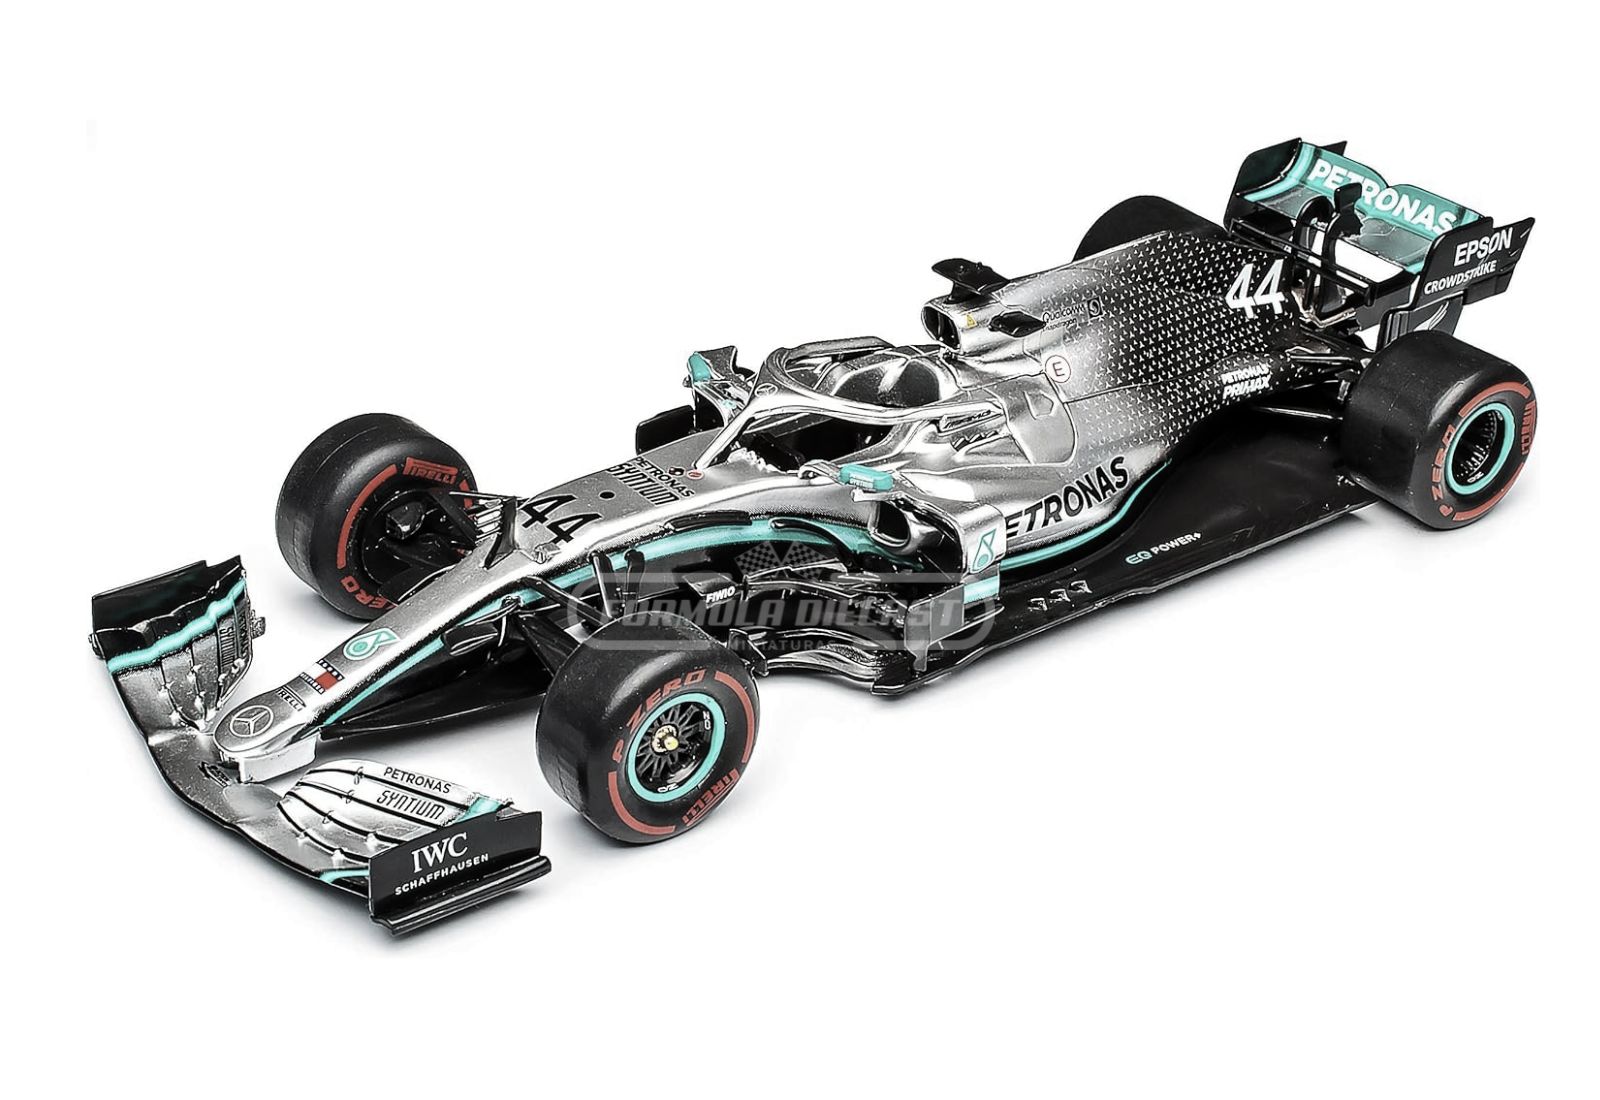 Miniatura de carro Mercedes-AMG F1 W10 #44 L. Hamilton, Campeão Mundial F1 2019, escala 1:24, marca Premium Collectibles